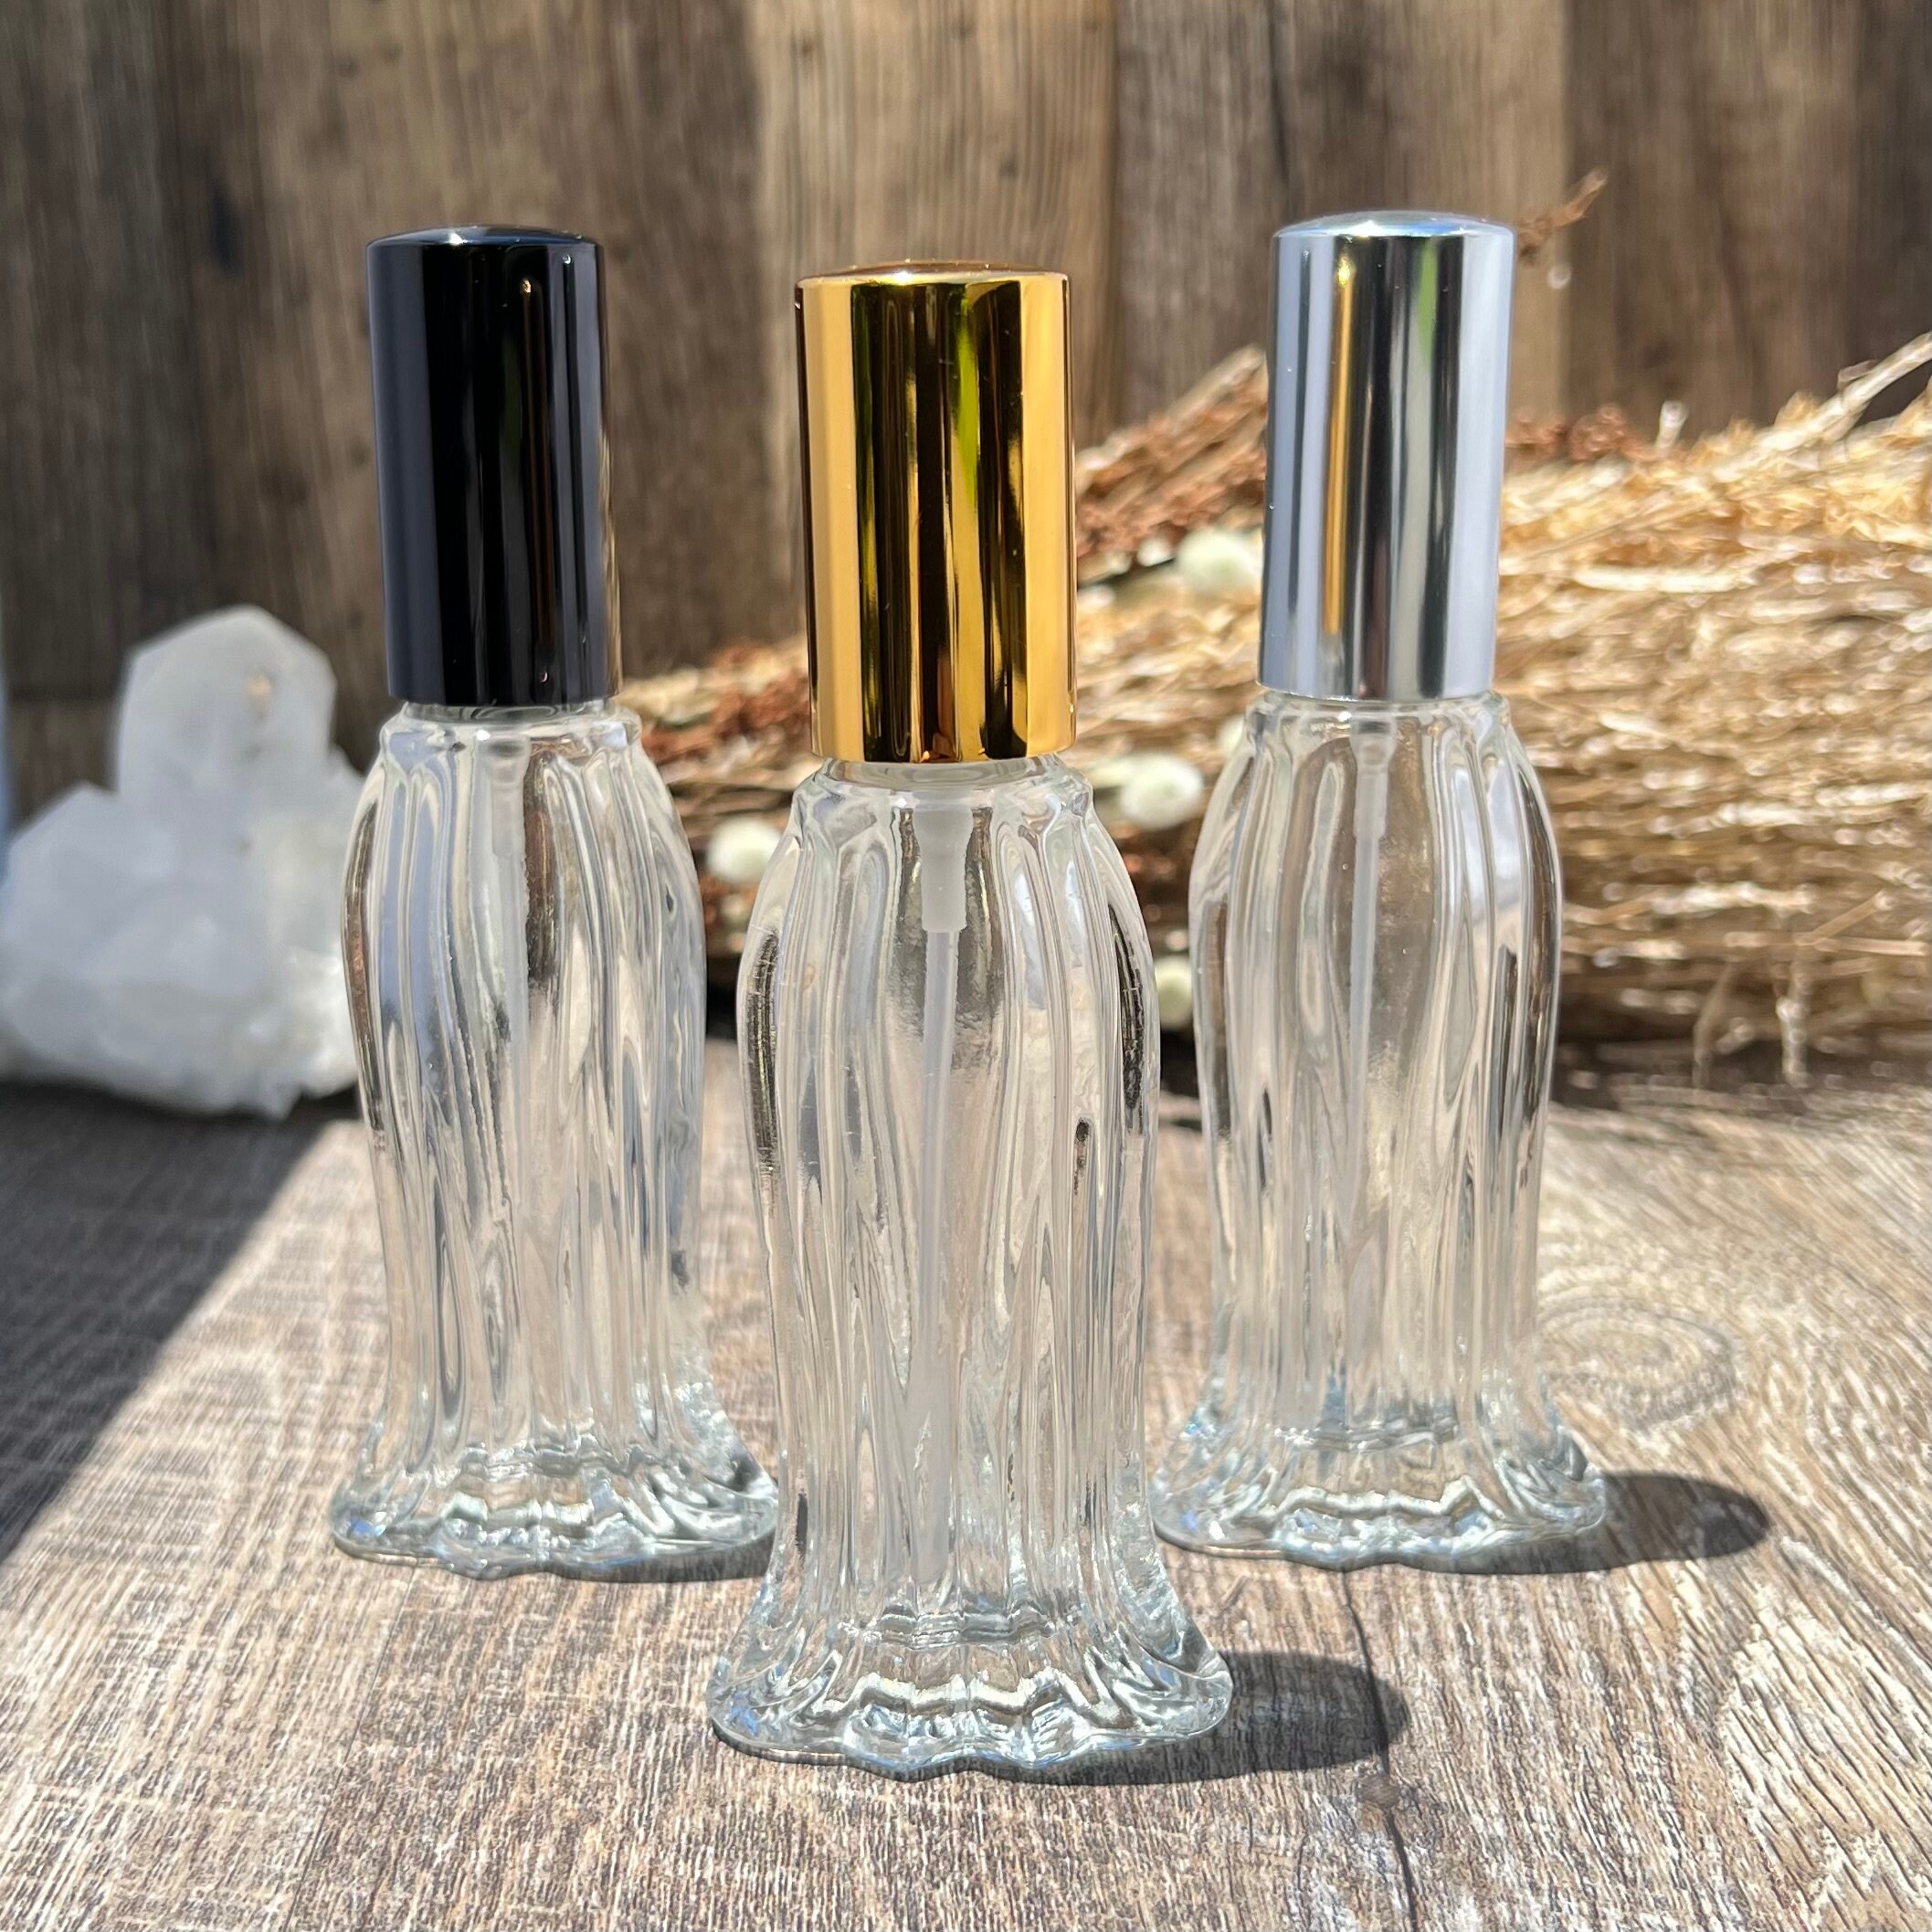 Wholesale 1/3 oz Body Fragrance Oils roll on 144 bottles 1 gross